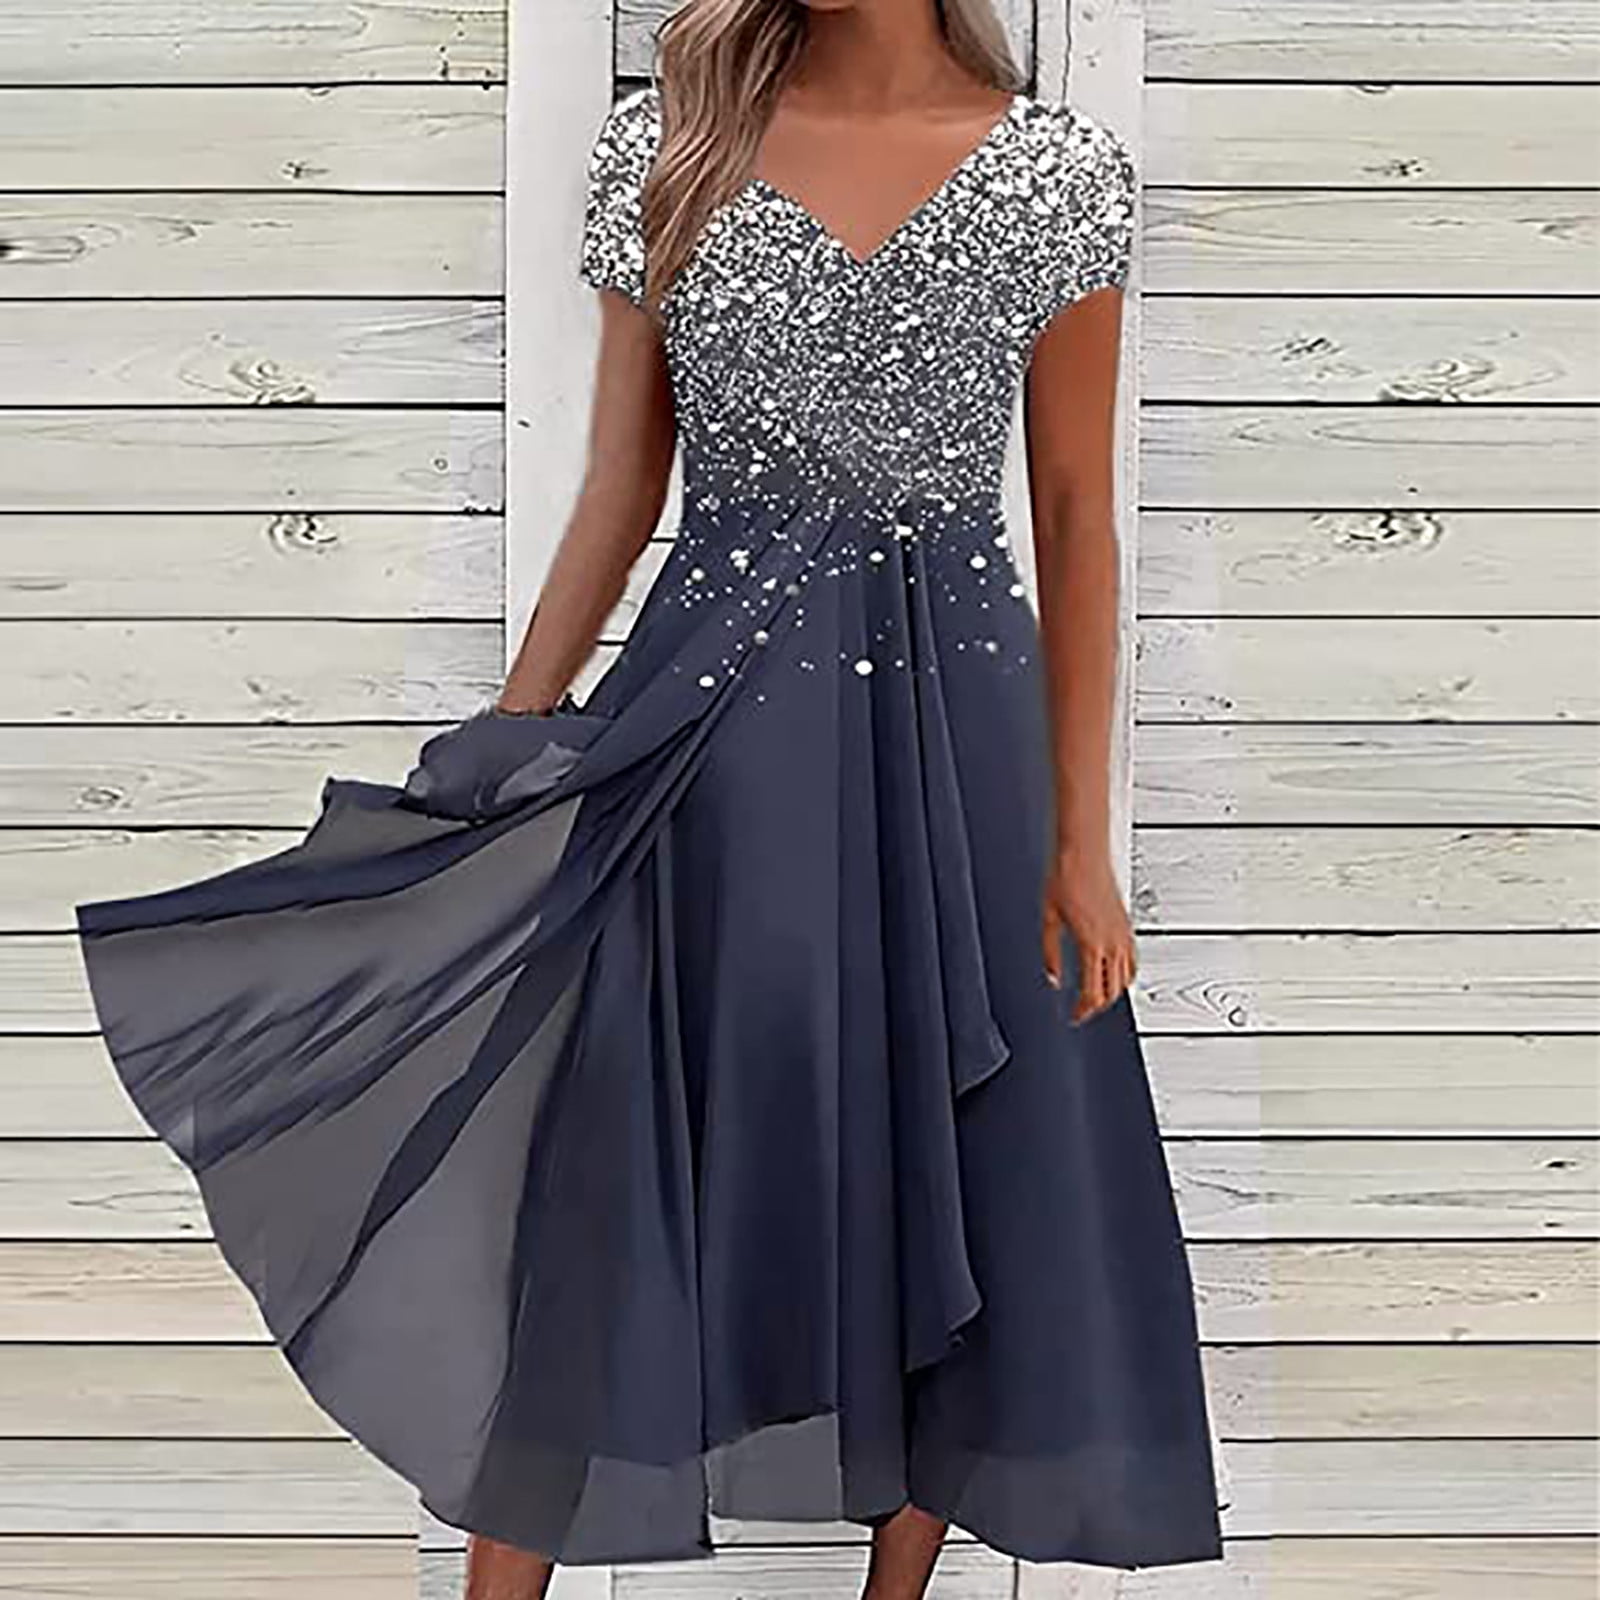 Elegant Short Dresses For Mother Of The Bride Sale Online ...